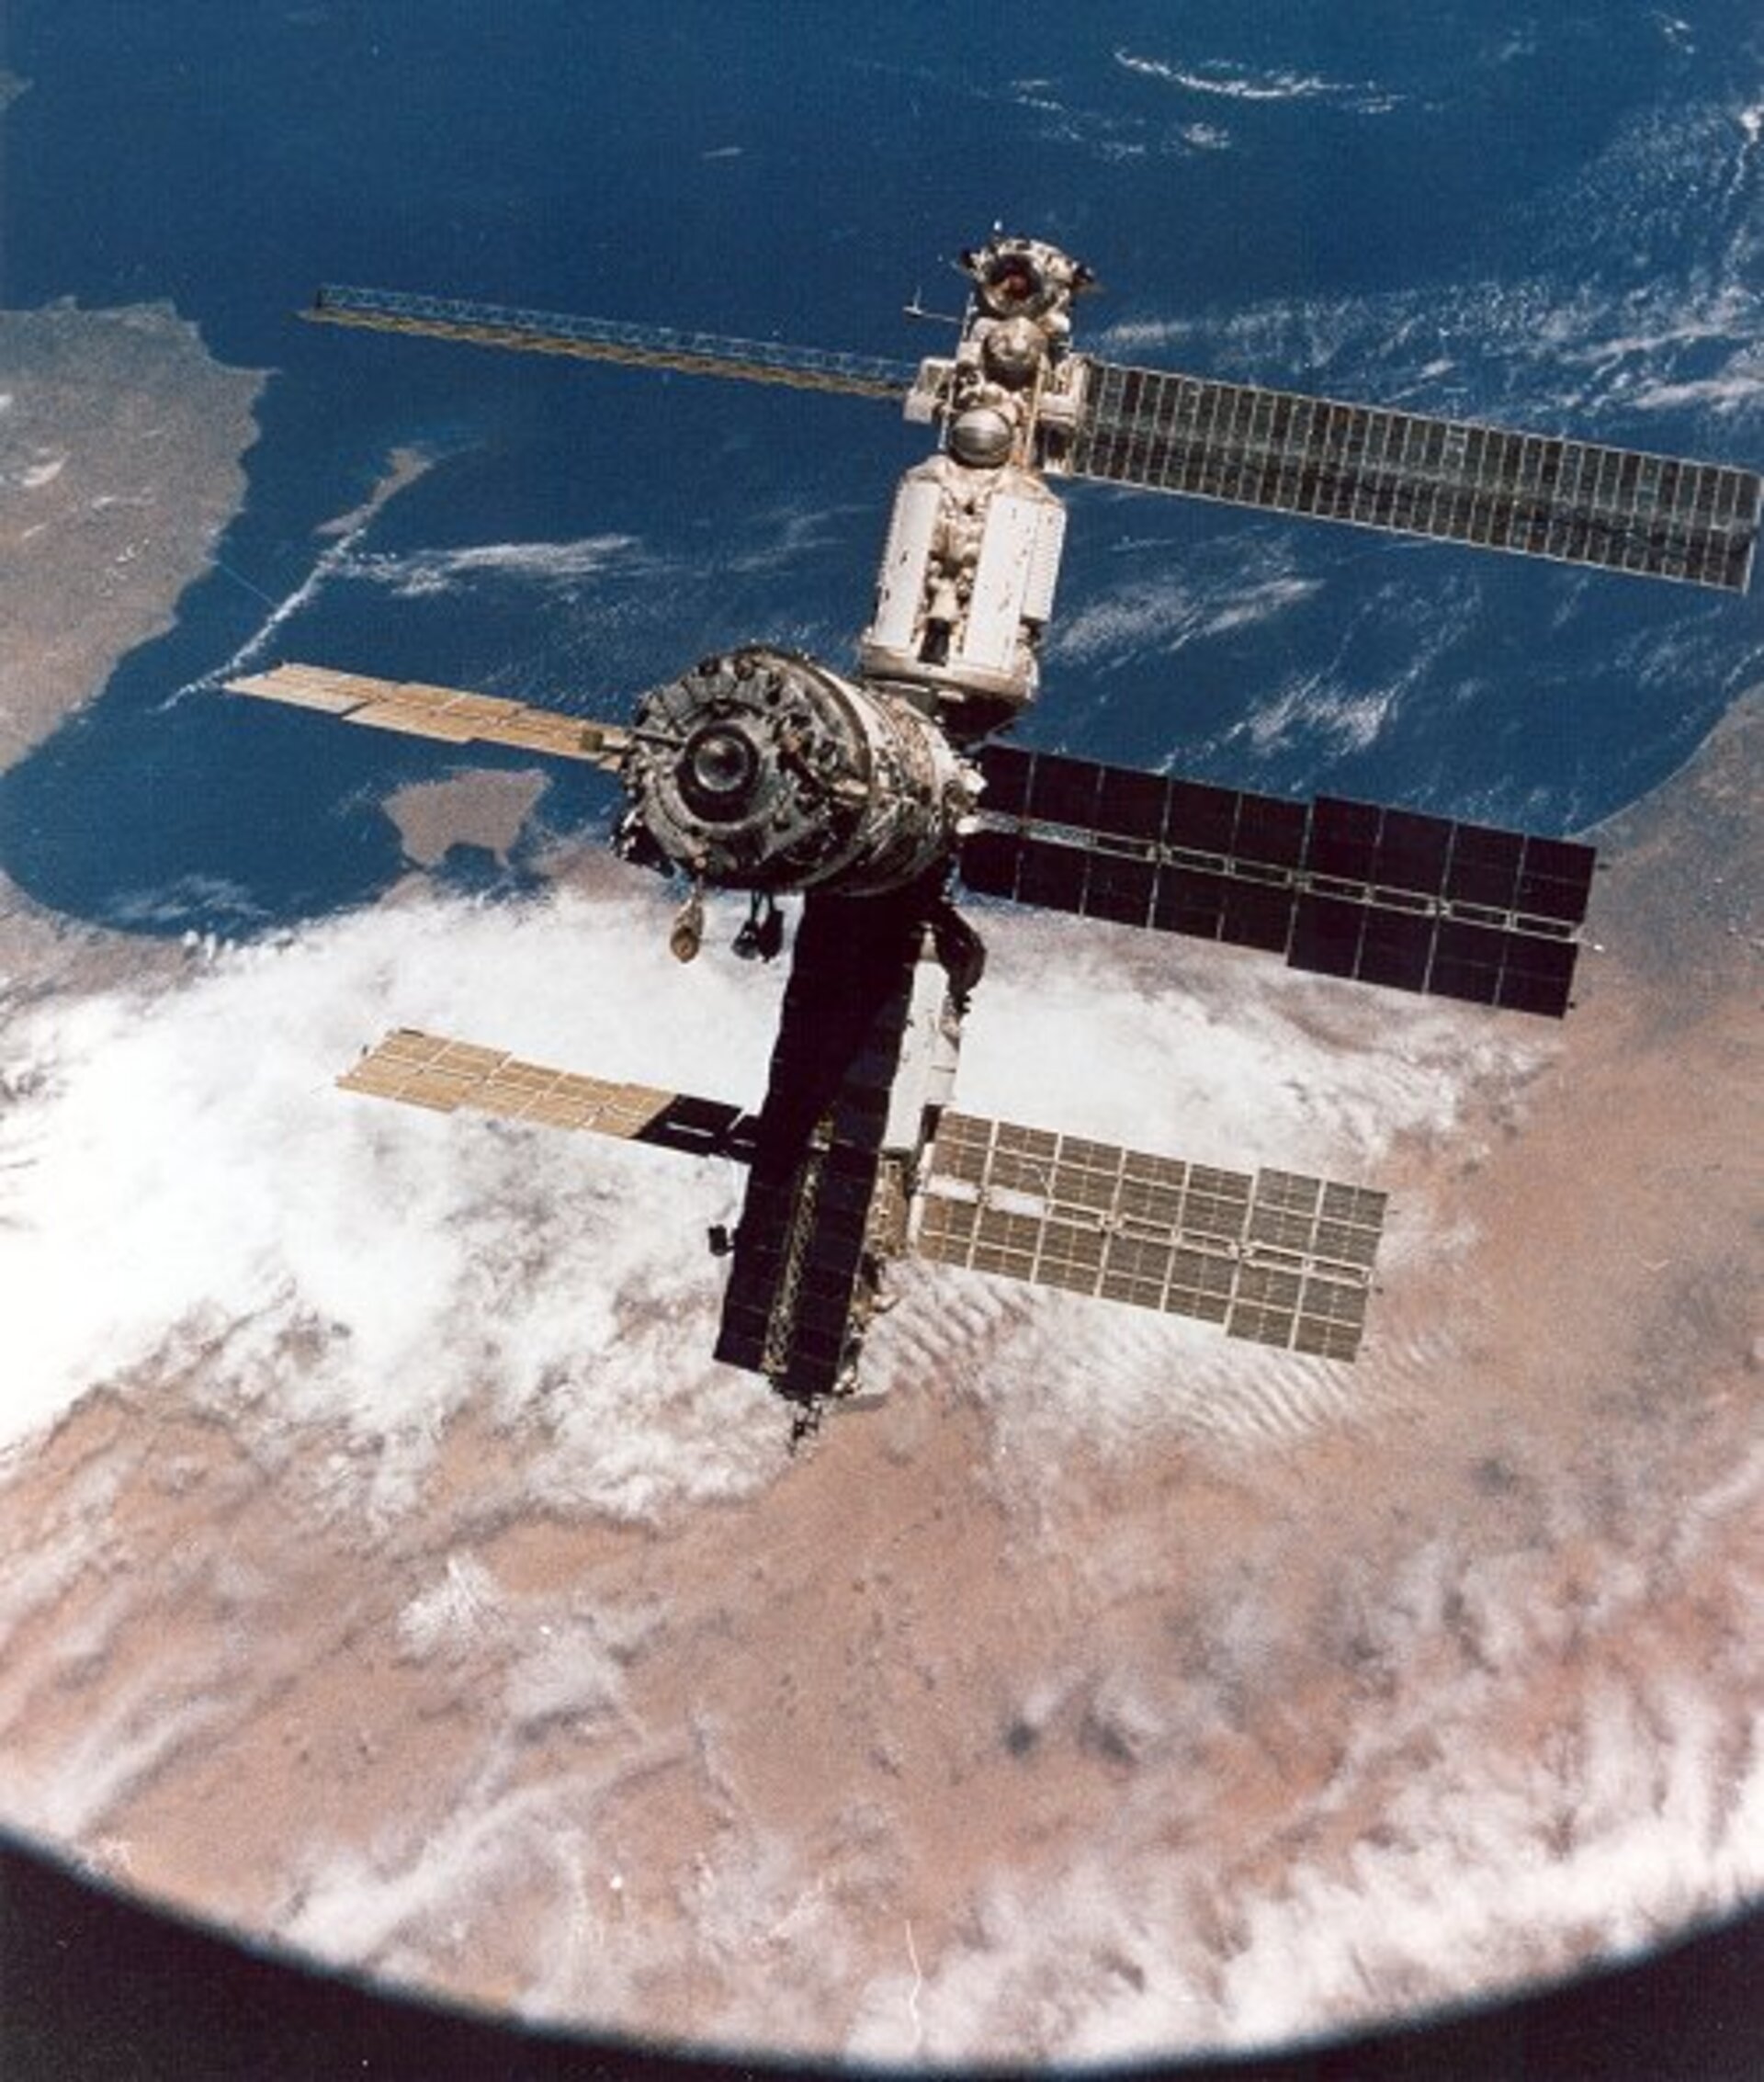 02 mir. Станция мир 1986. Космическая орбитальная станция мир. 1986 Запущена Советская орбитальная станция «мир». Станция мир 2001.